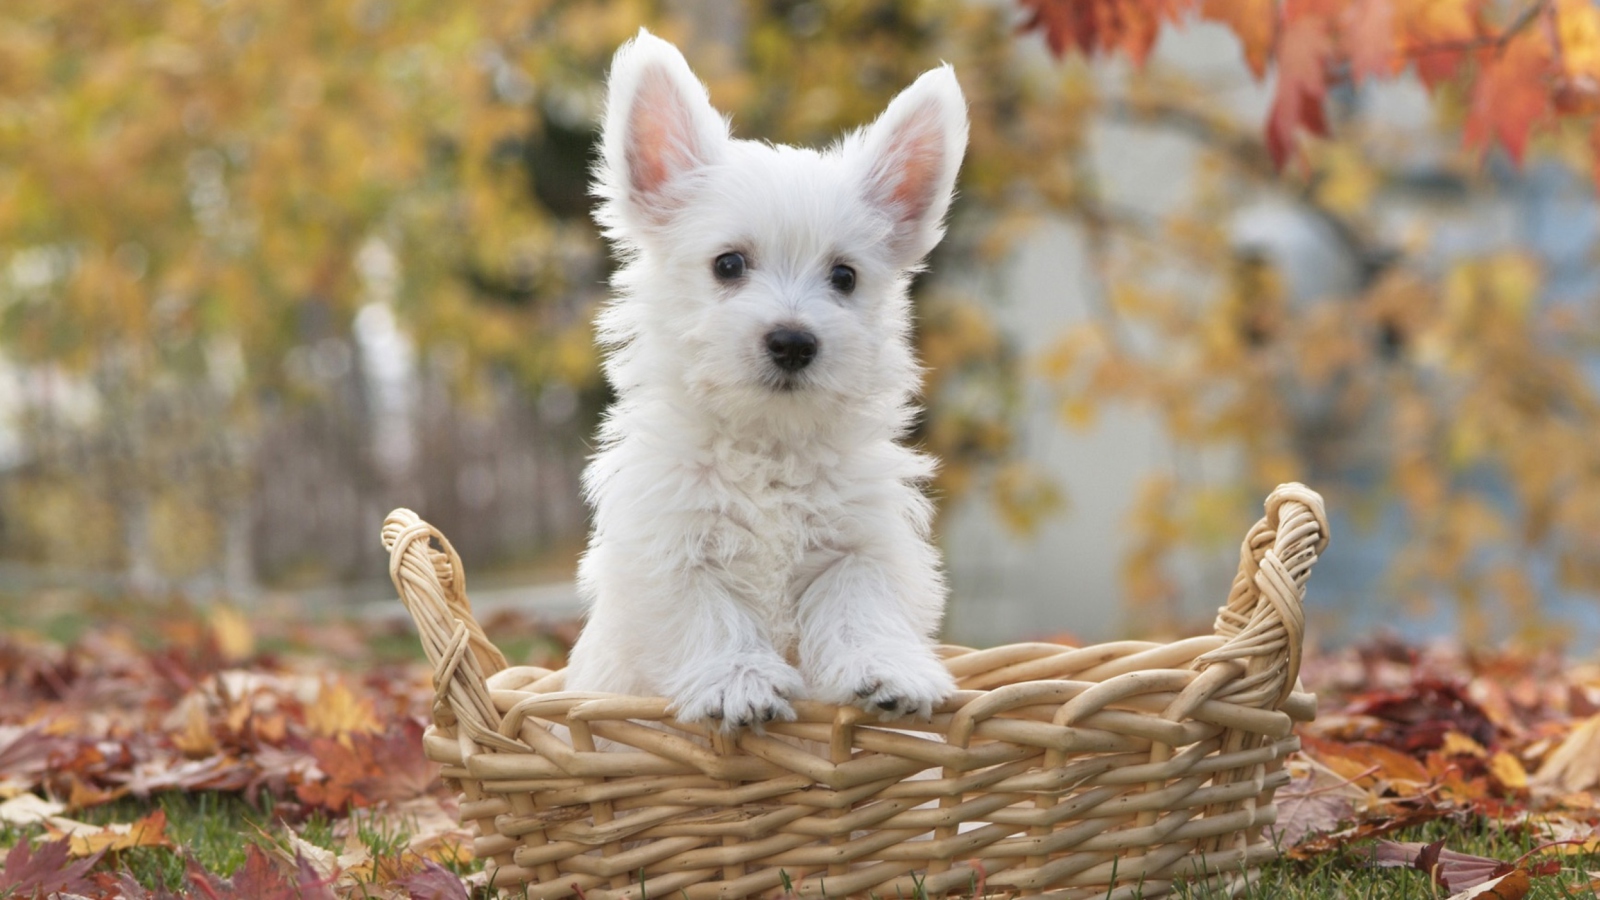 Cute Doggy In Basket wallpaper 1600x900